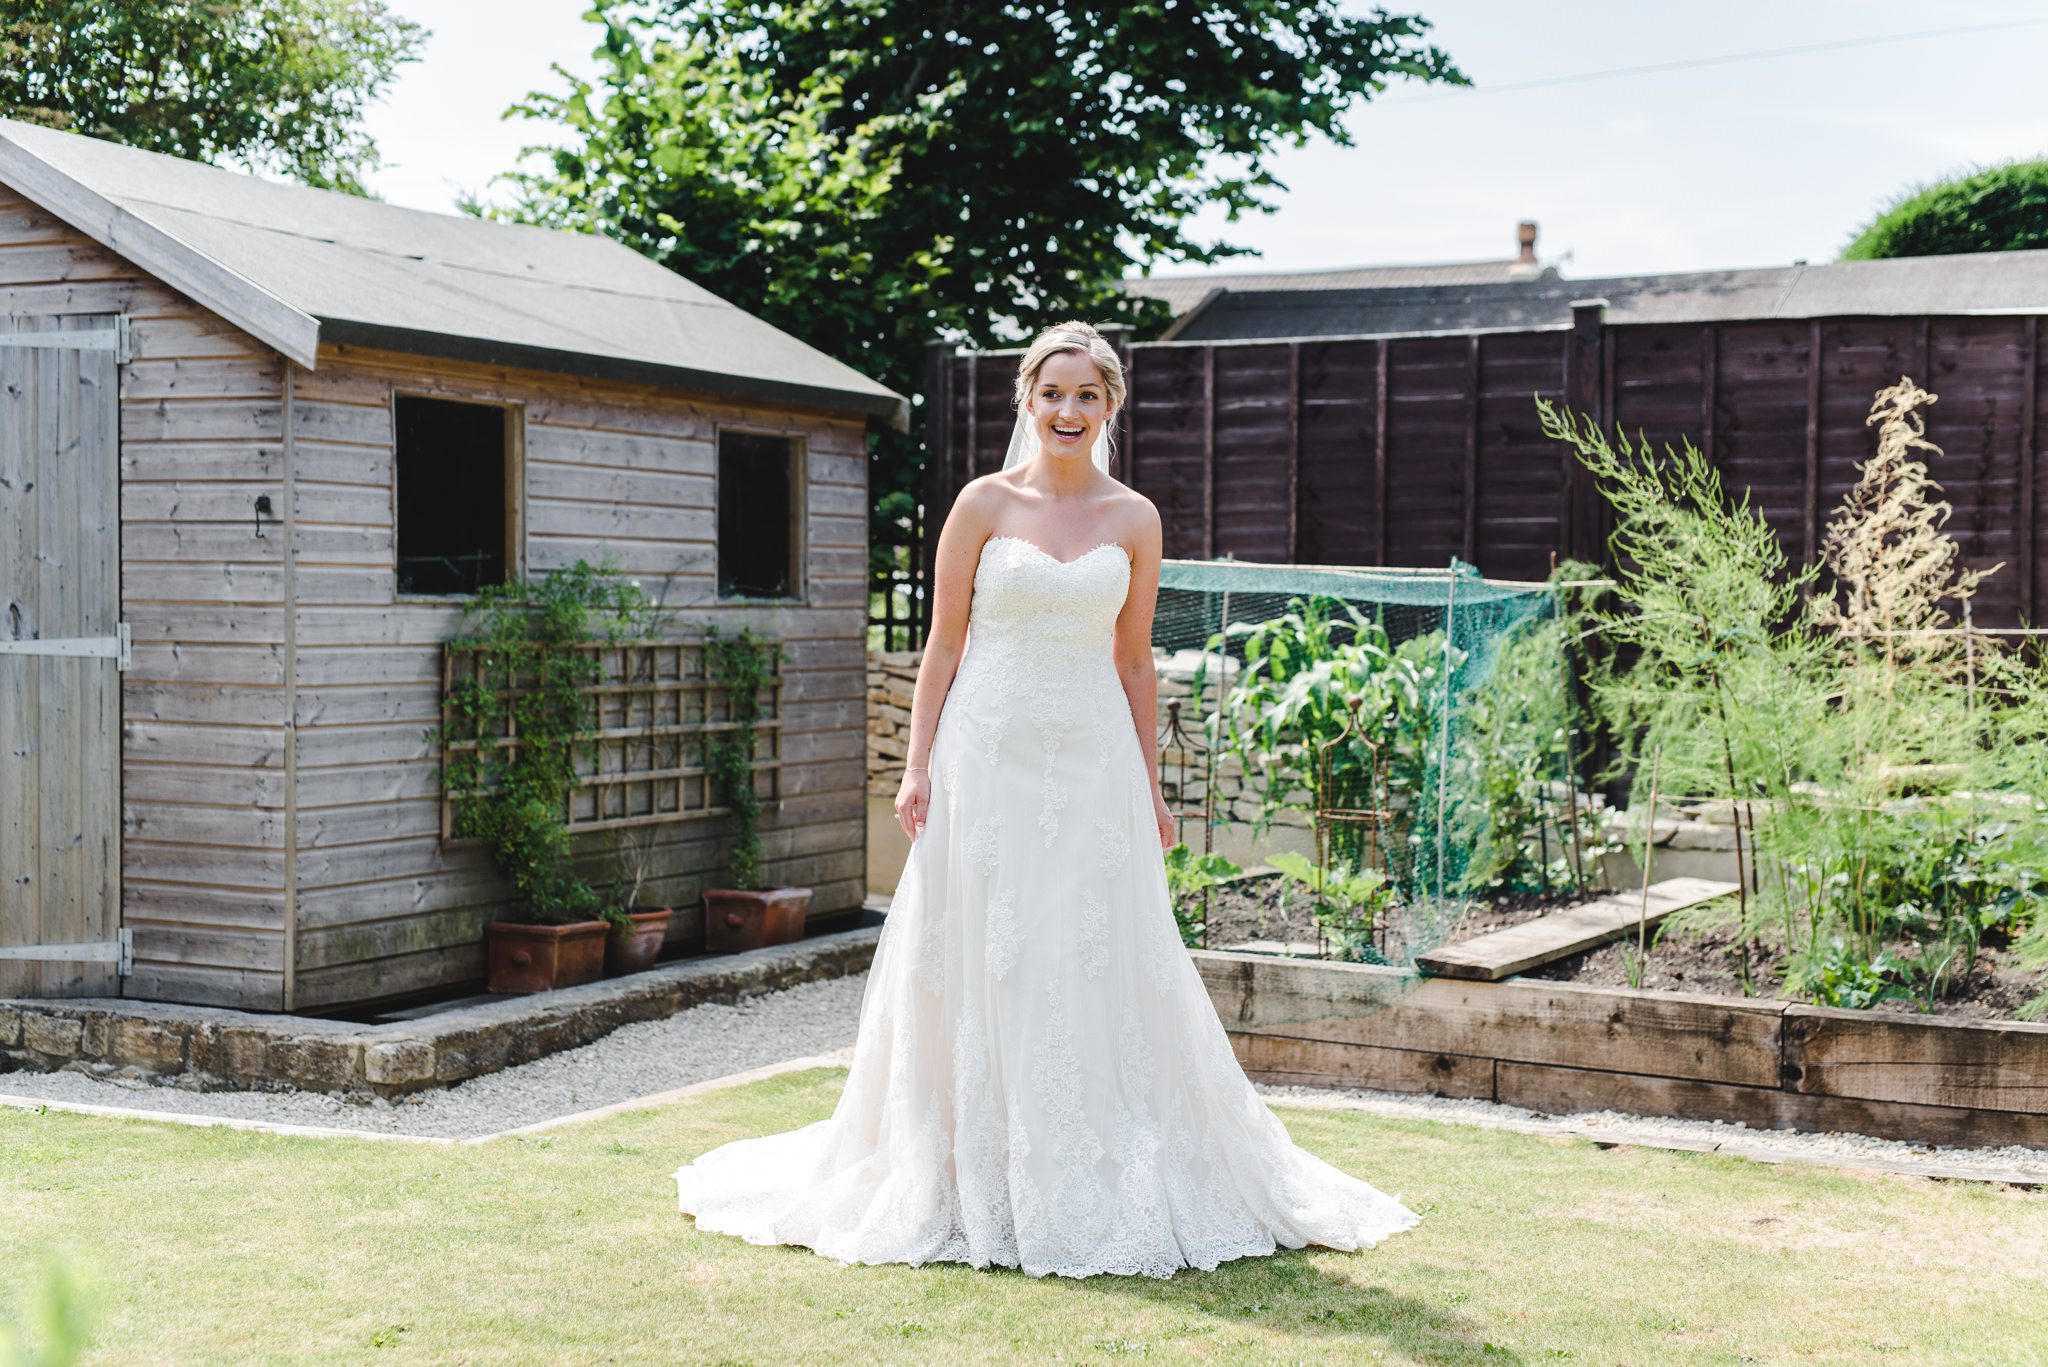 A bride in her wedding dress standing in her garden